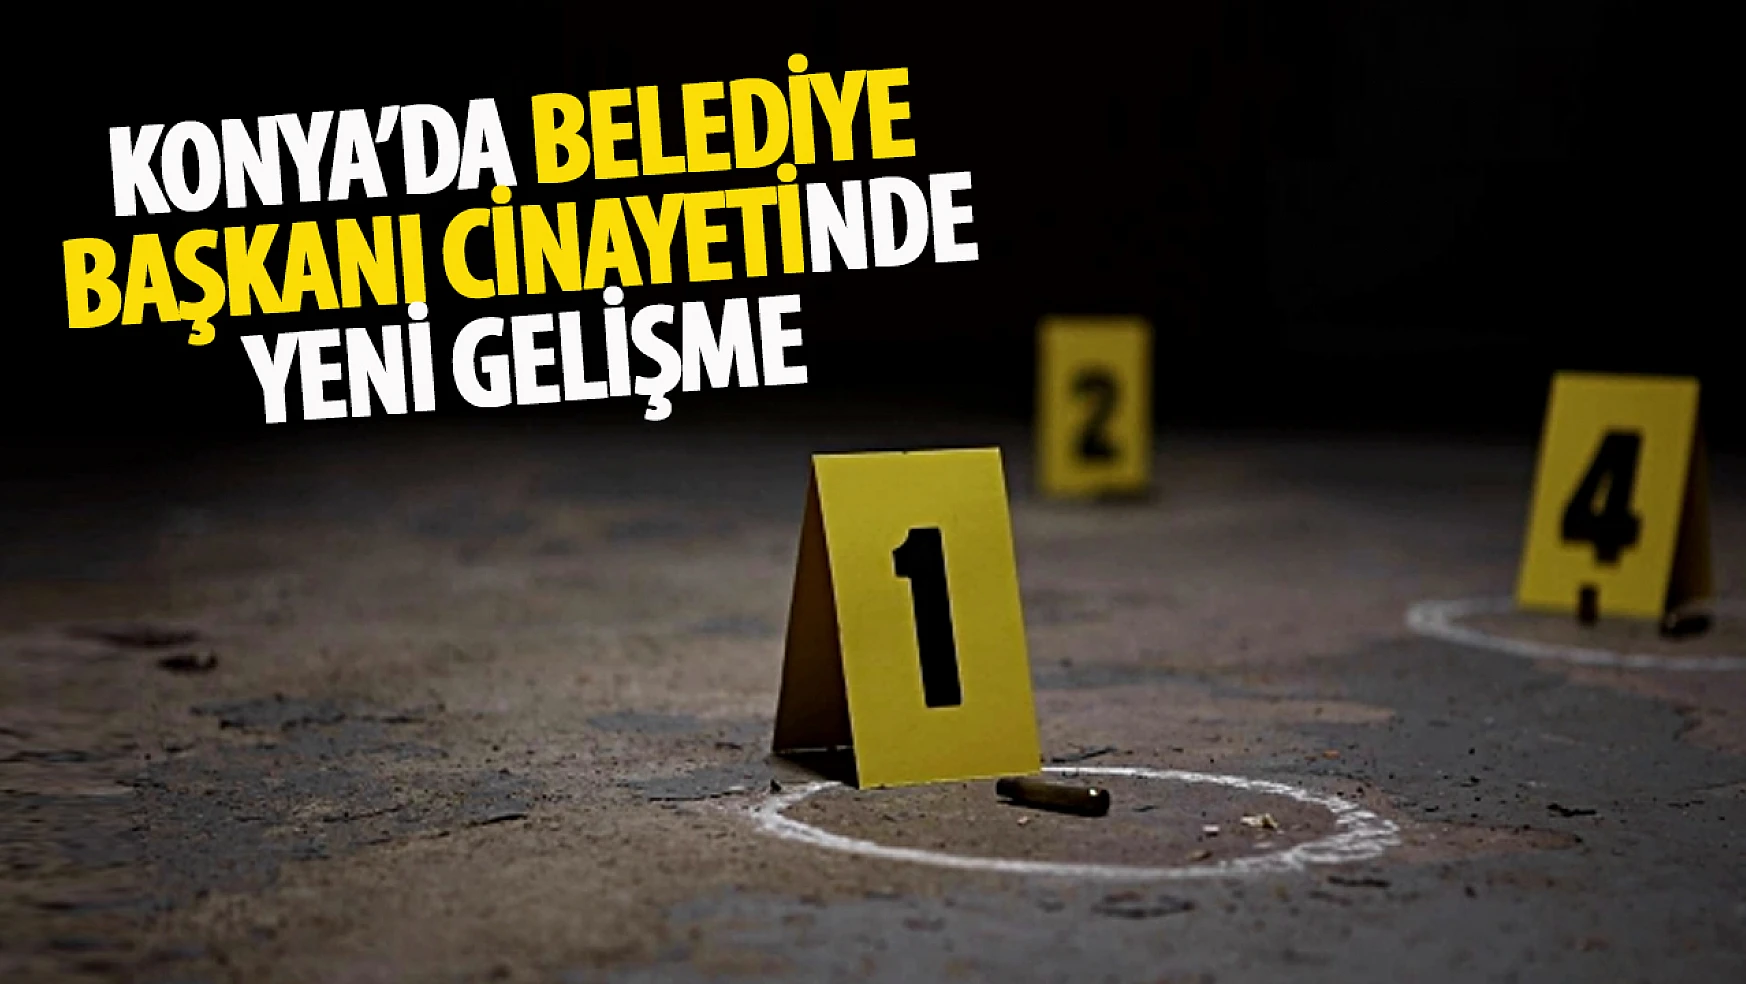 Konya'daki belediye başkanı cinayetinde sanıkların yeniden yargılanmasına başlandı!